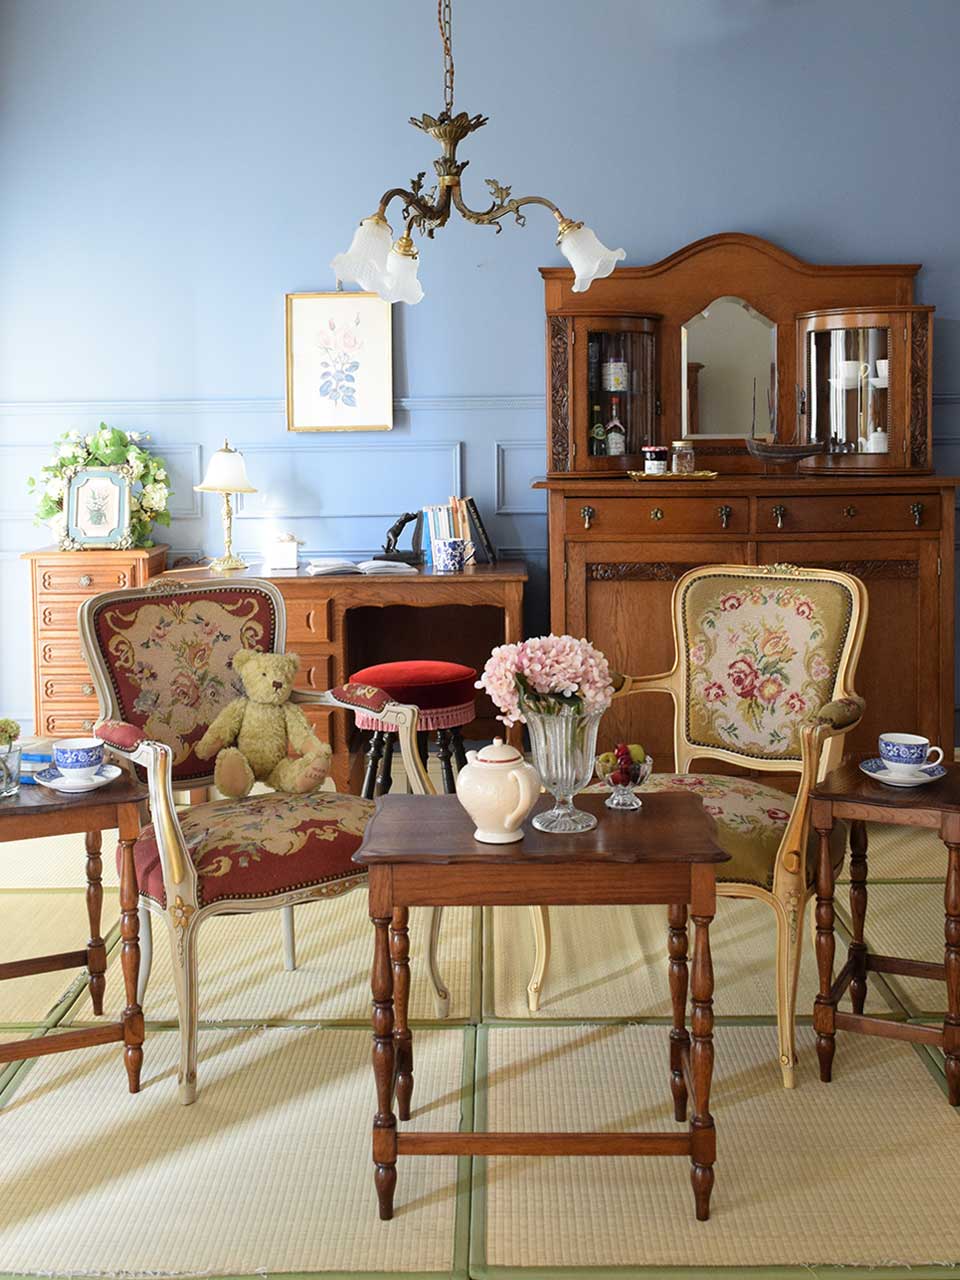 フレンチエレガントのリビング | フレンチスタイルの家具で作る着付けを楽しむ和室コーデ